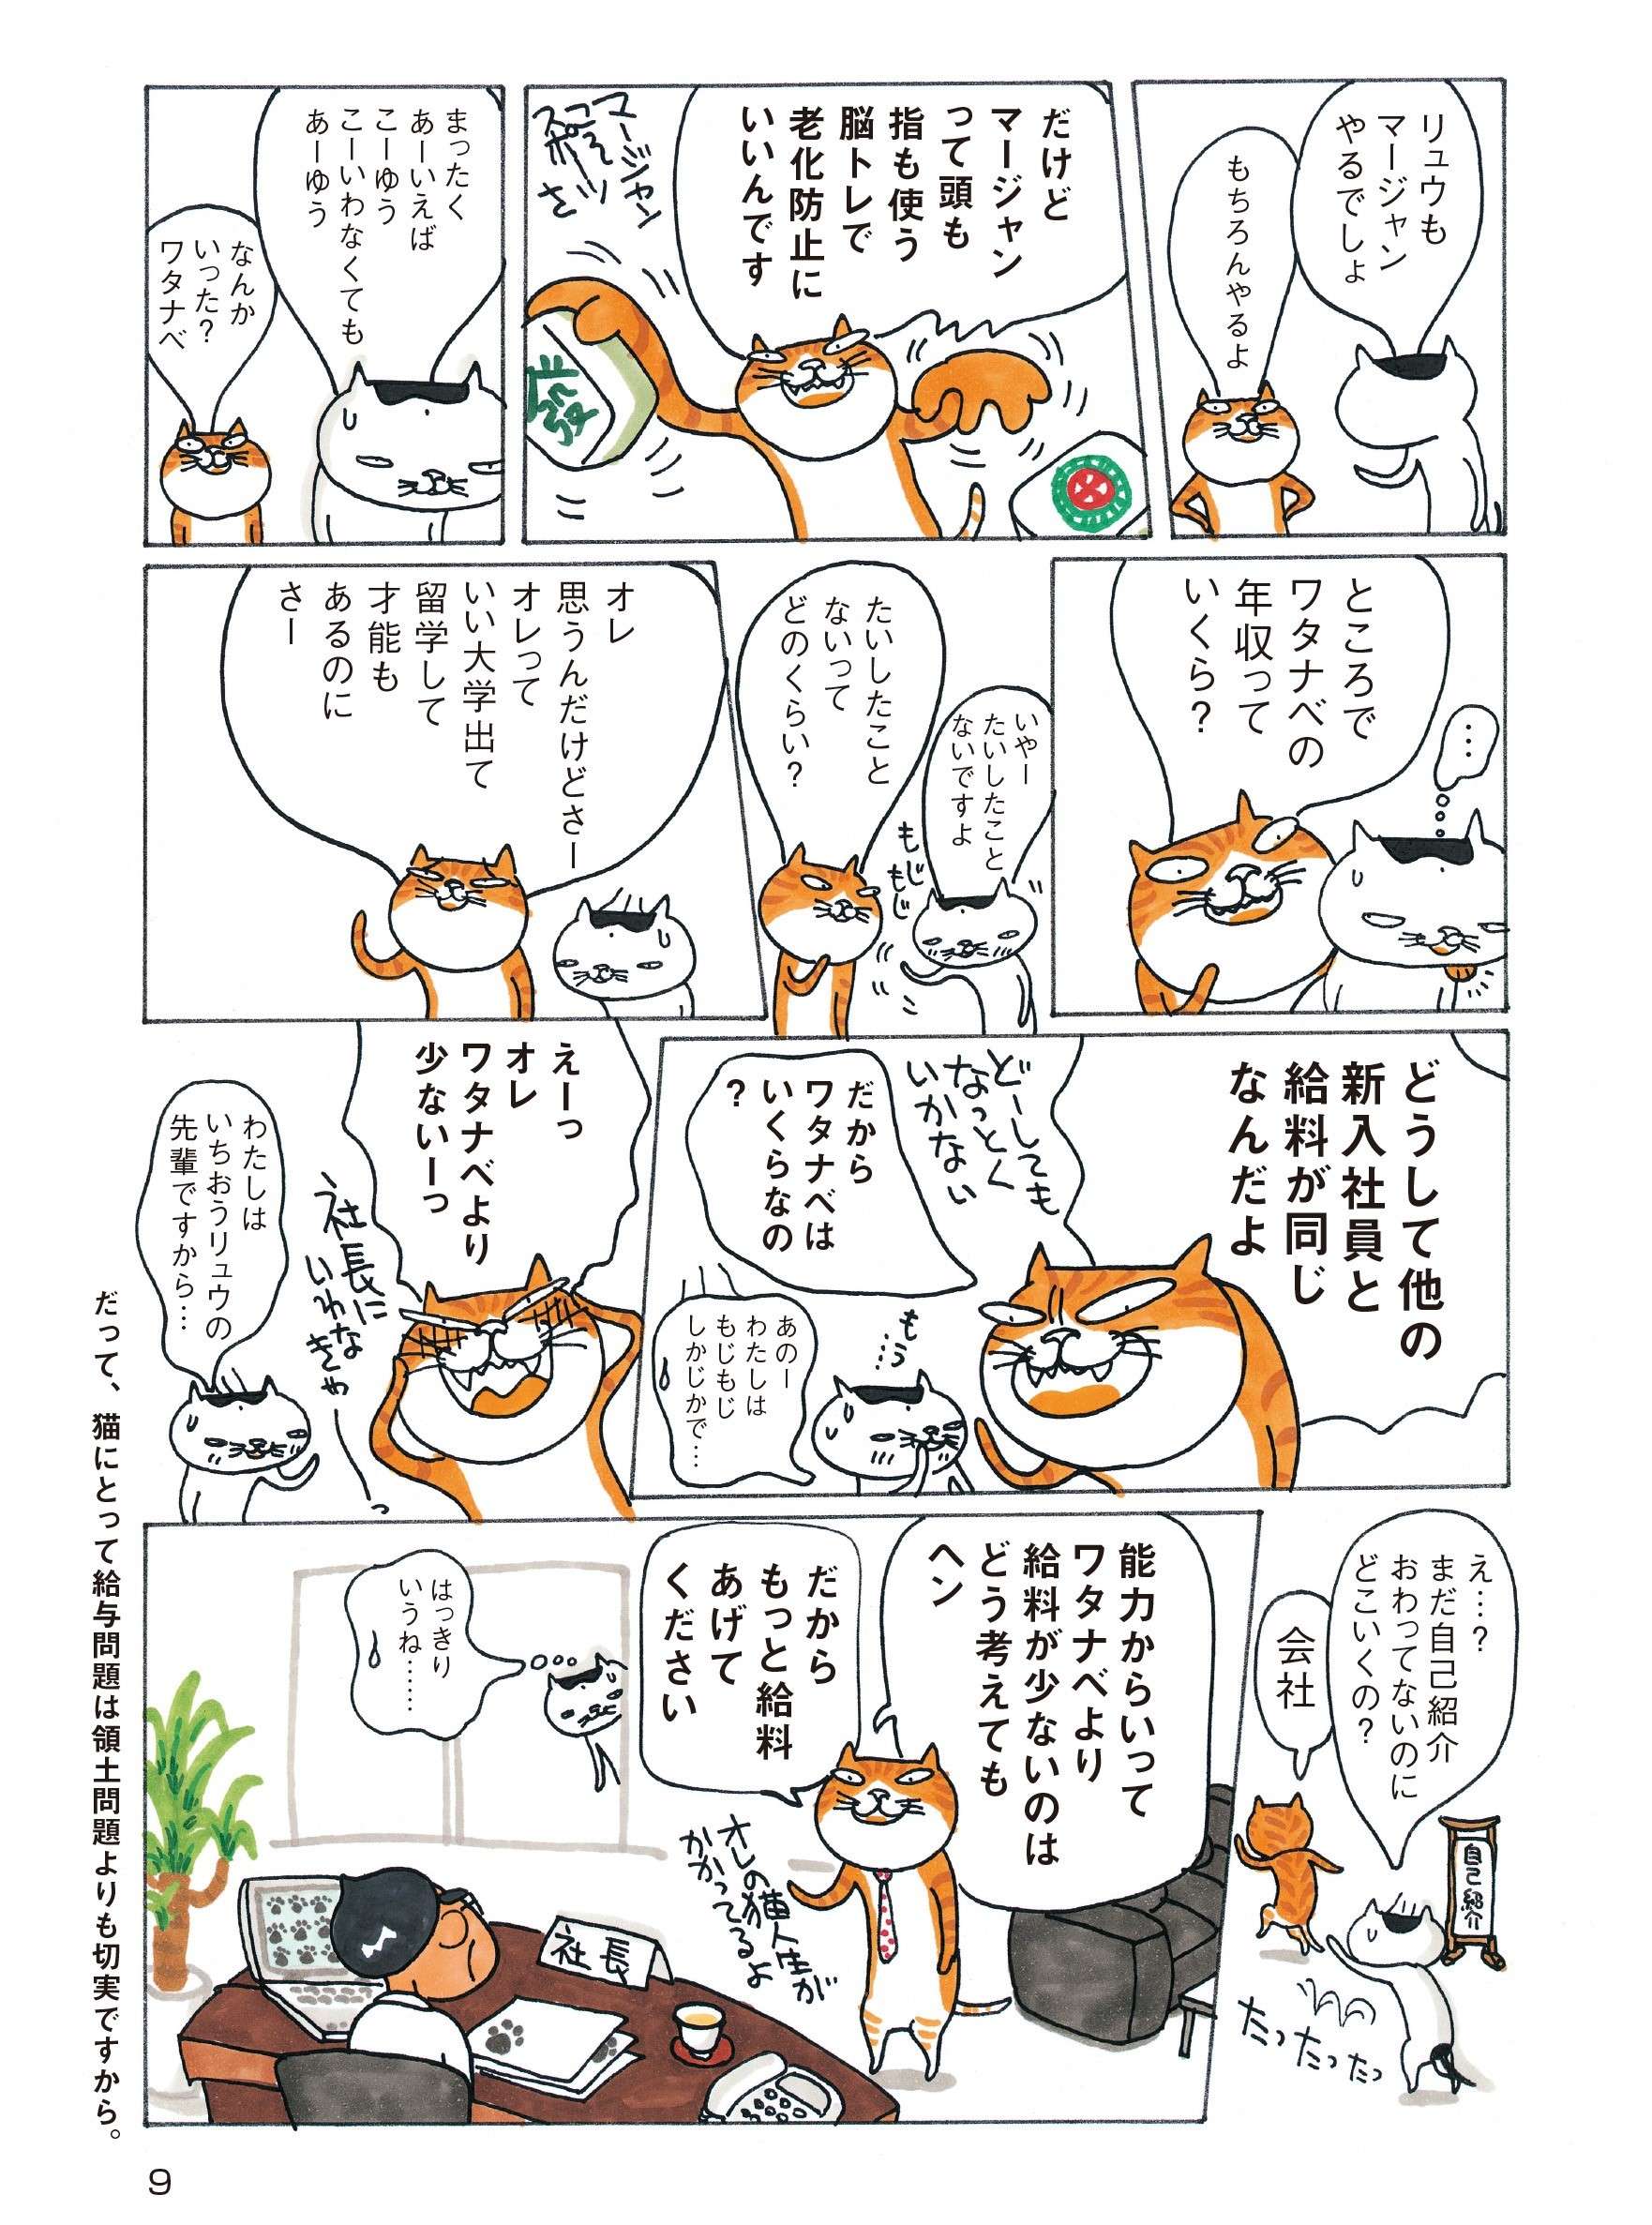 自己紹介から違う！  謙遜する日本猫とアピールしまくる中国猫／ニャンでも比較文化論  ニャンでも比較文化論①-6.jpg